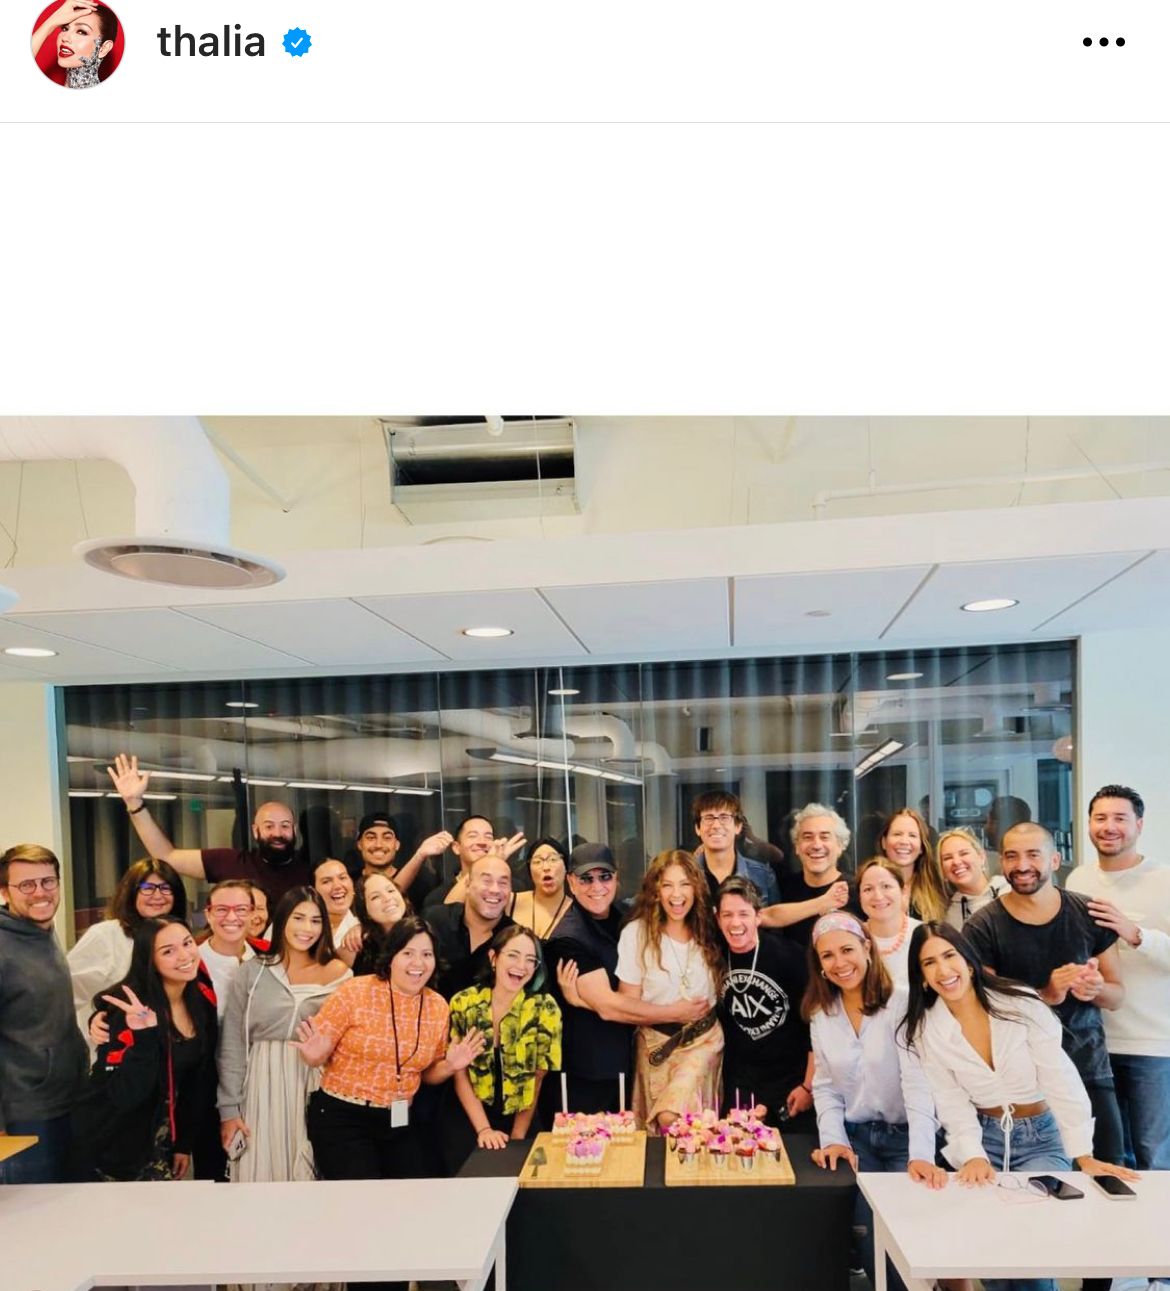 Tommy Mottola formó parte de la sorpresa
(Foto: Instagram)